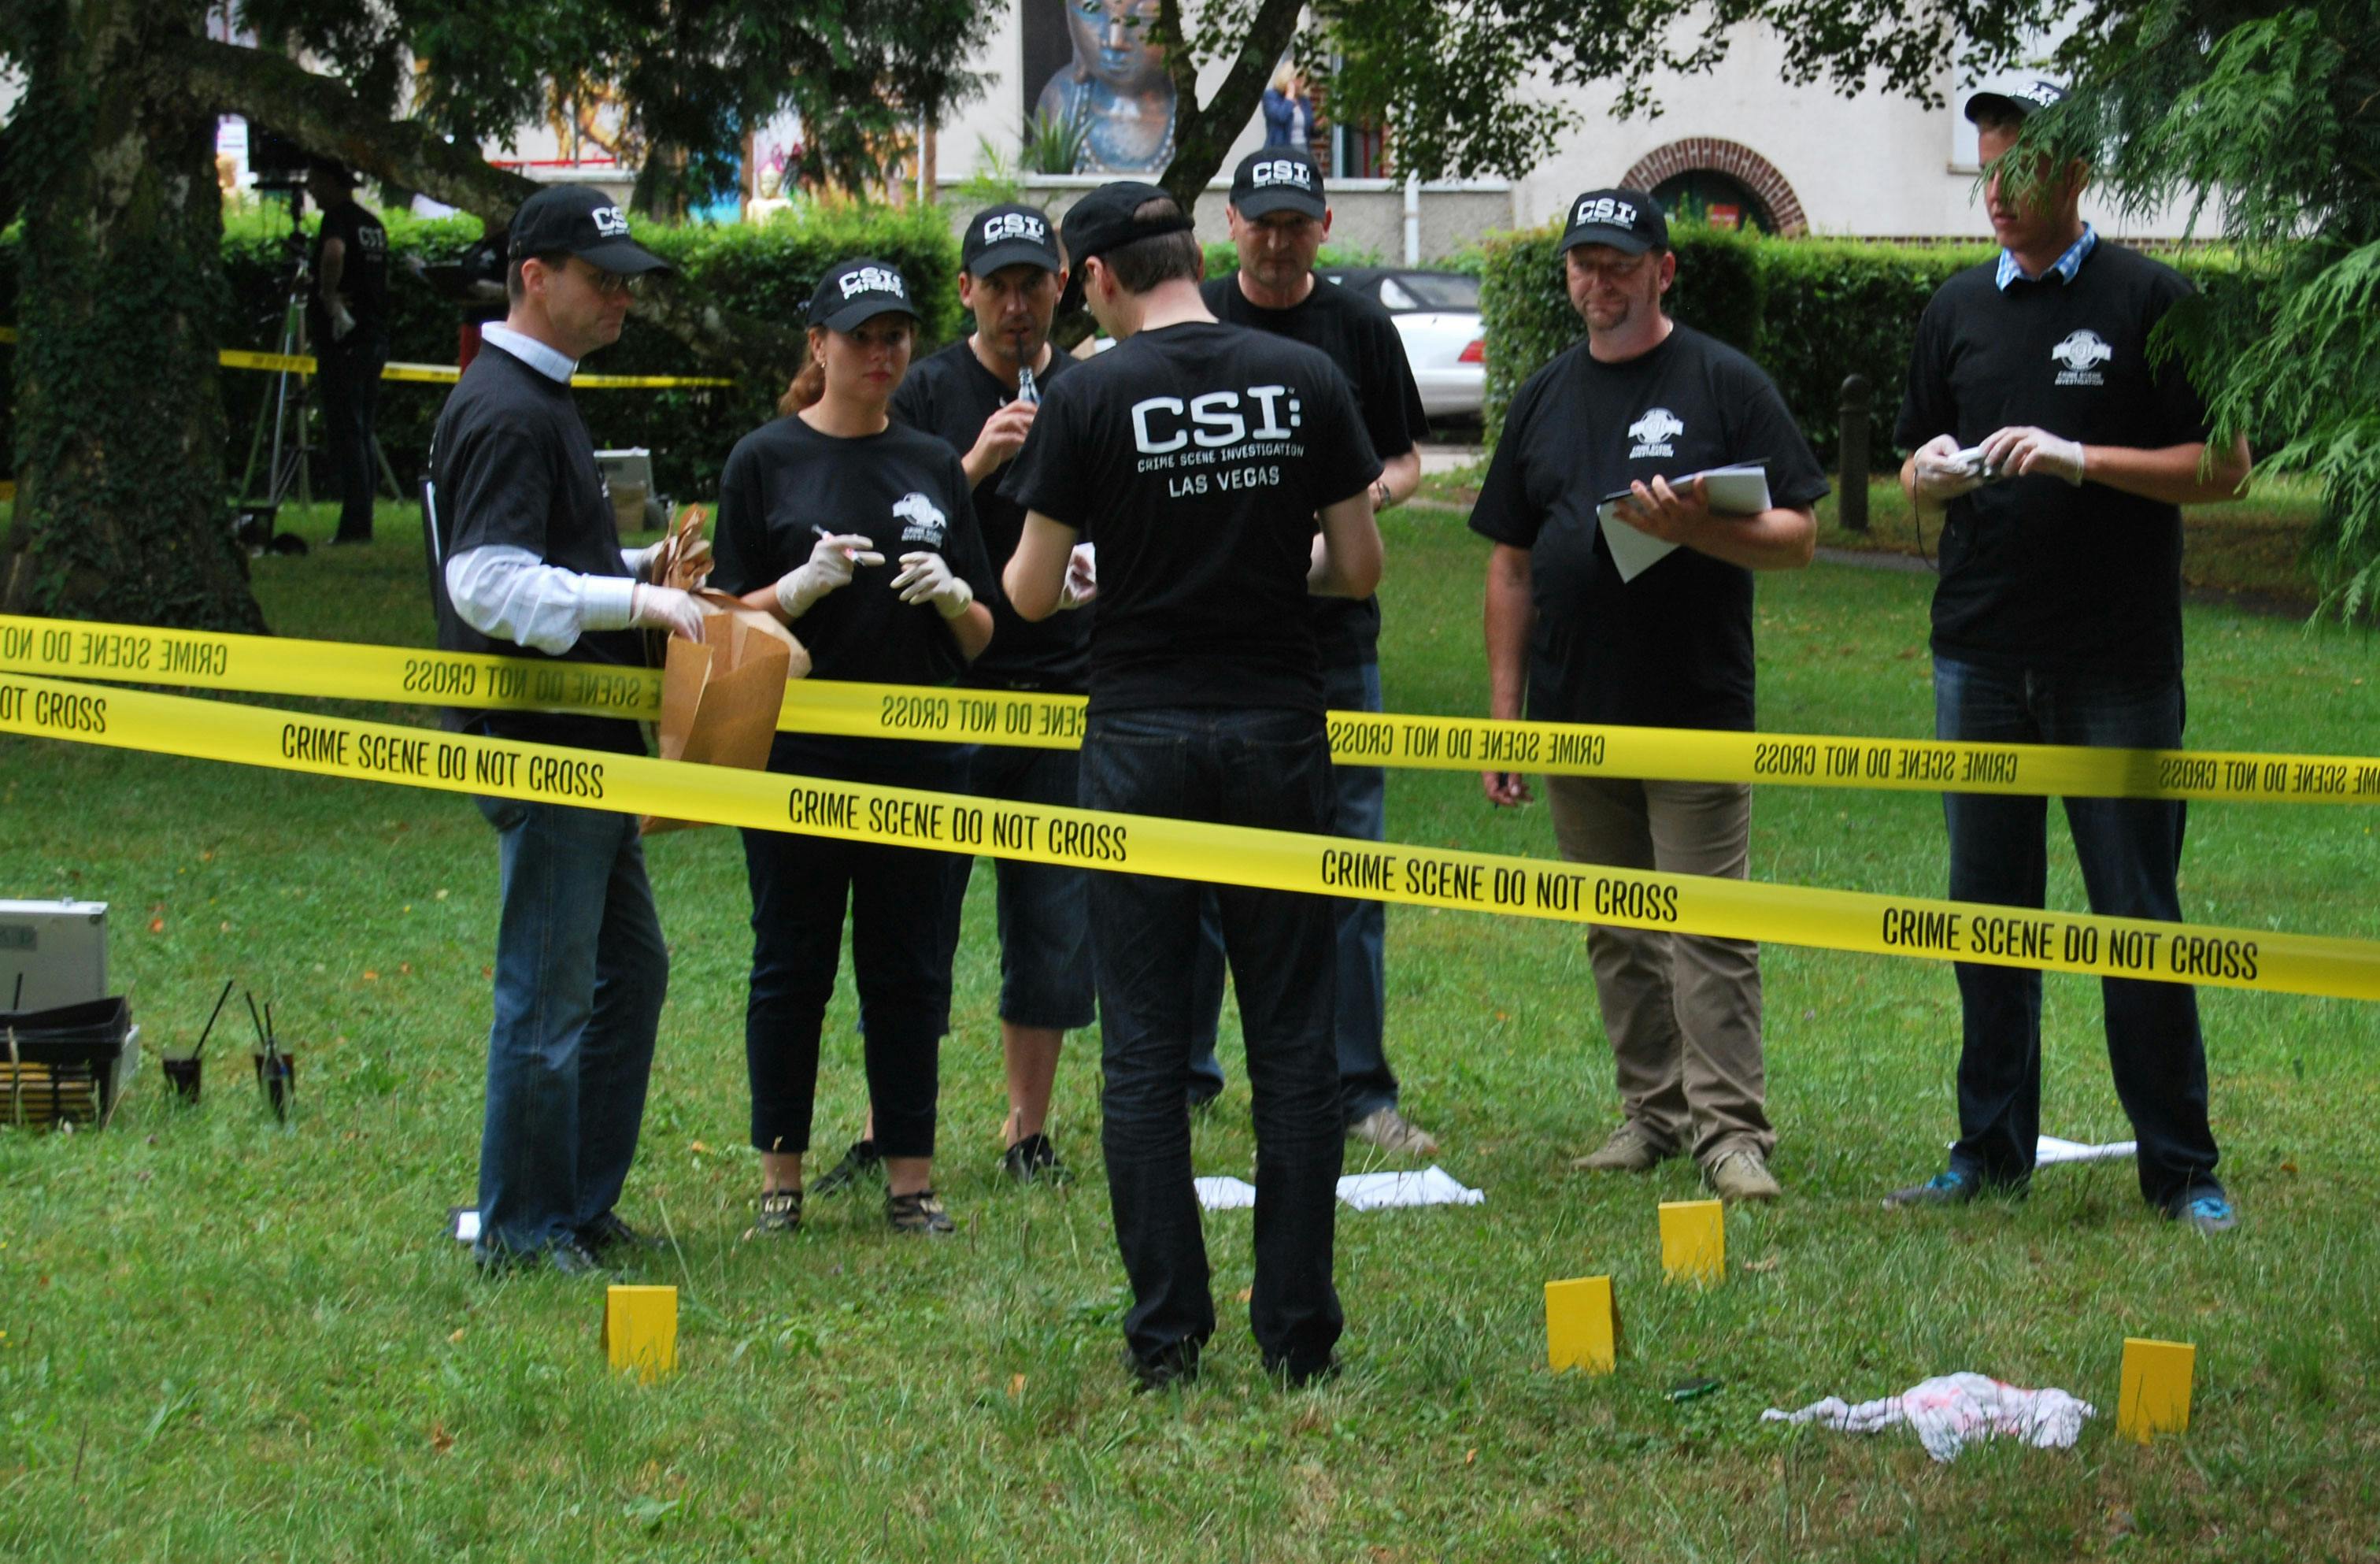 CSI Ermittlung | 5 Stunden Suche nach dem Verbrecher